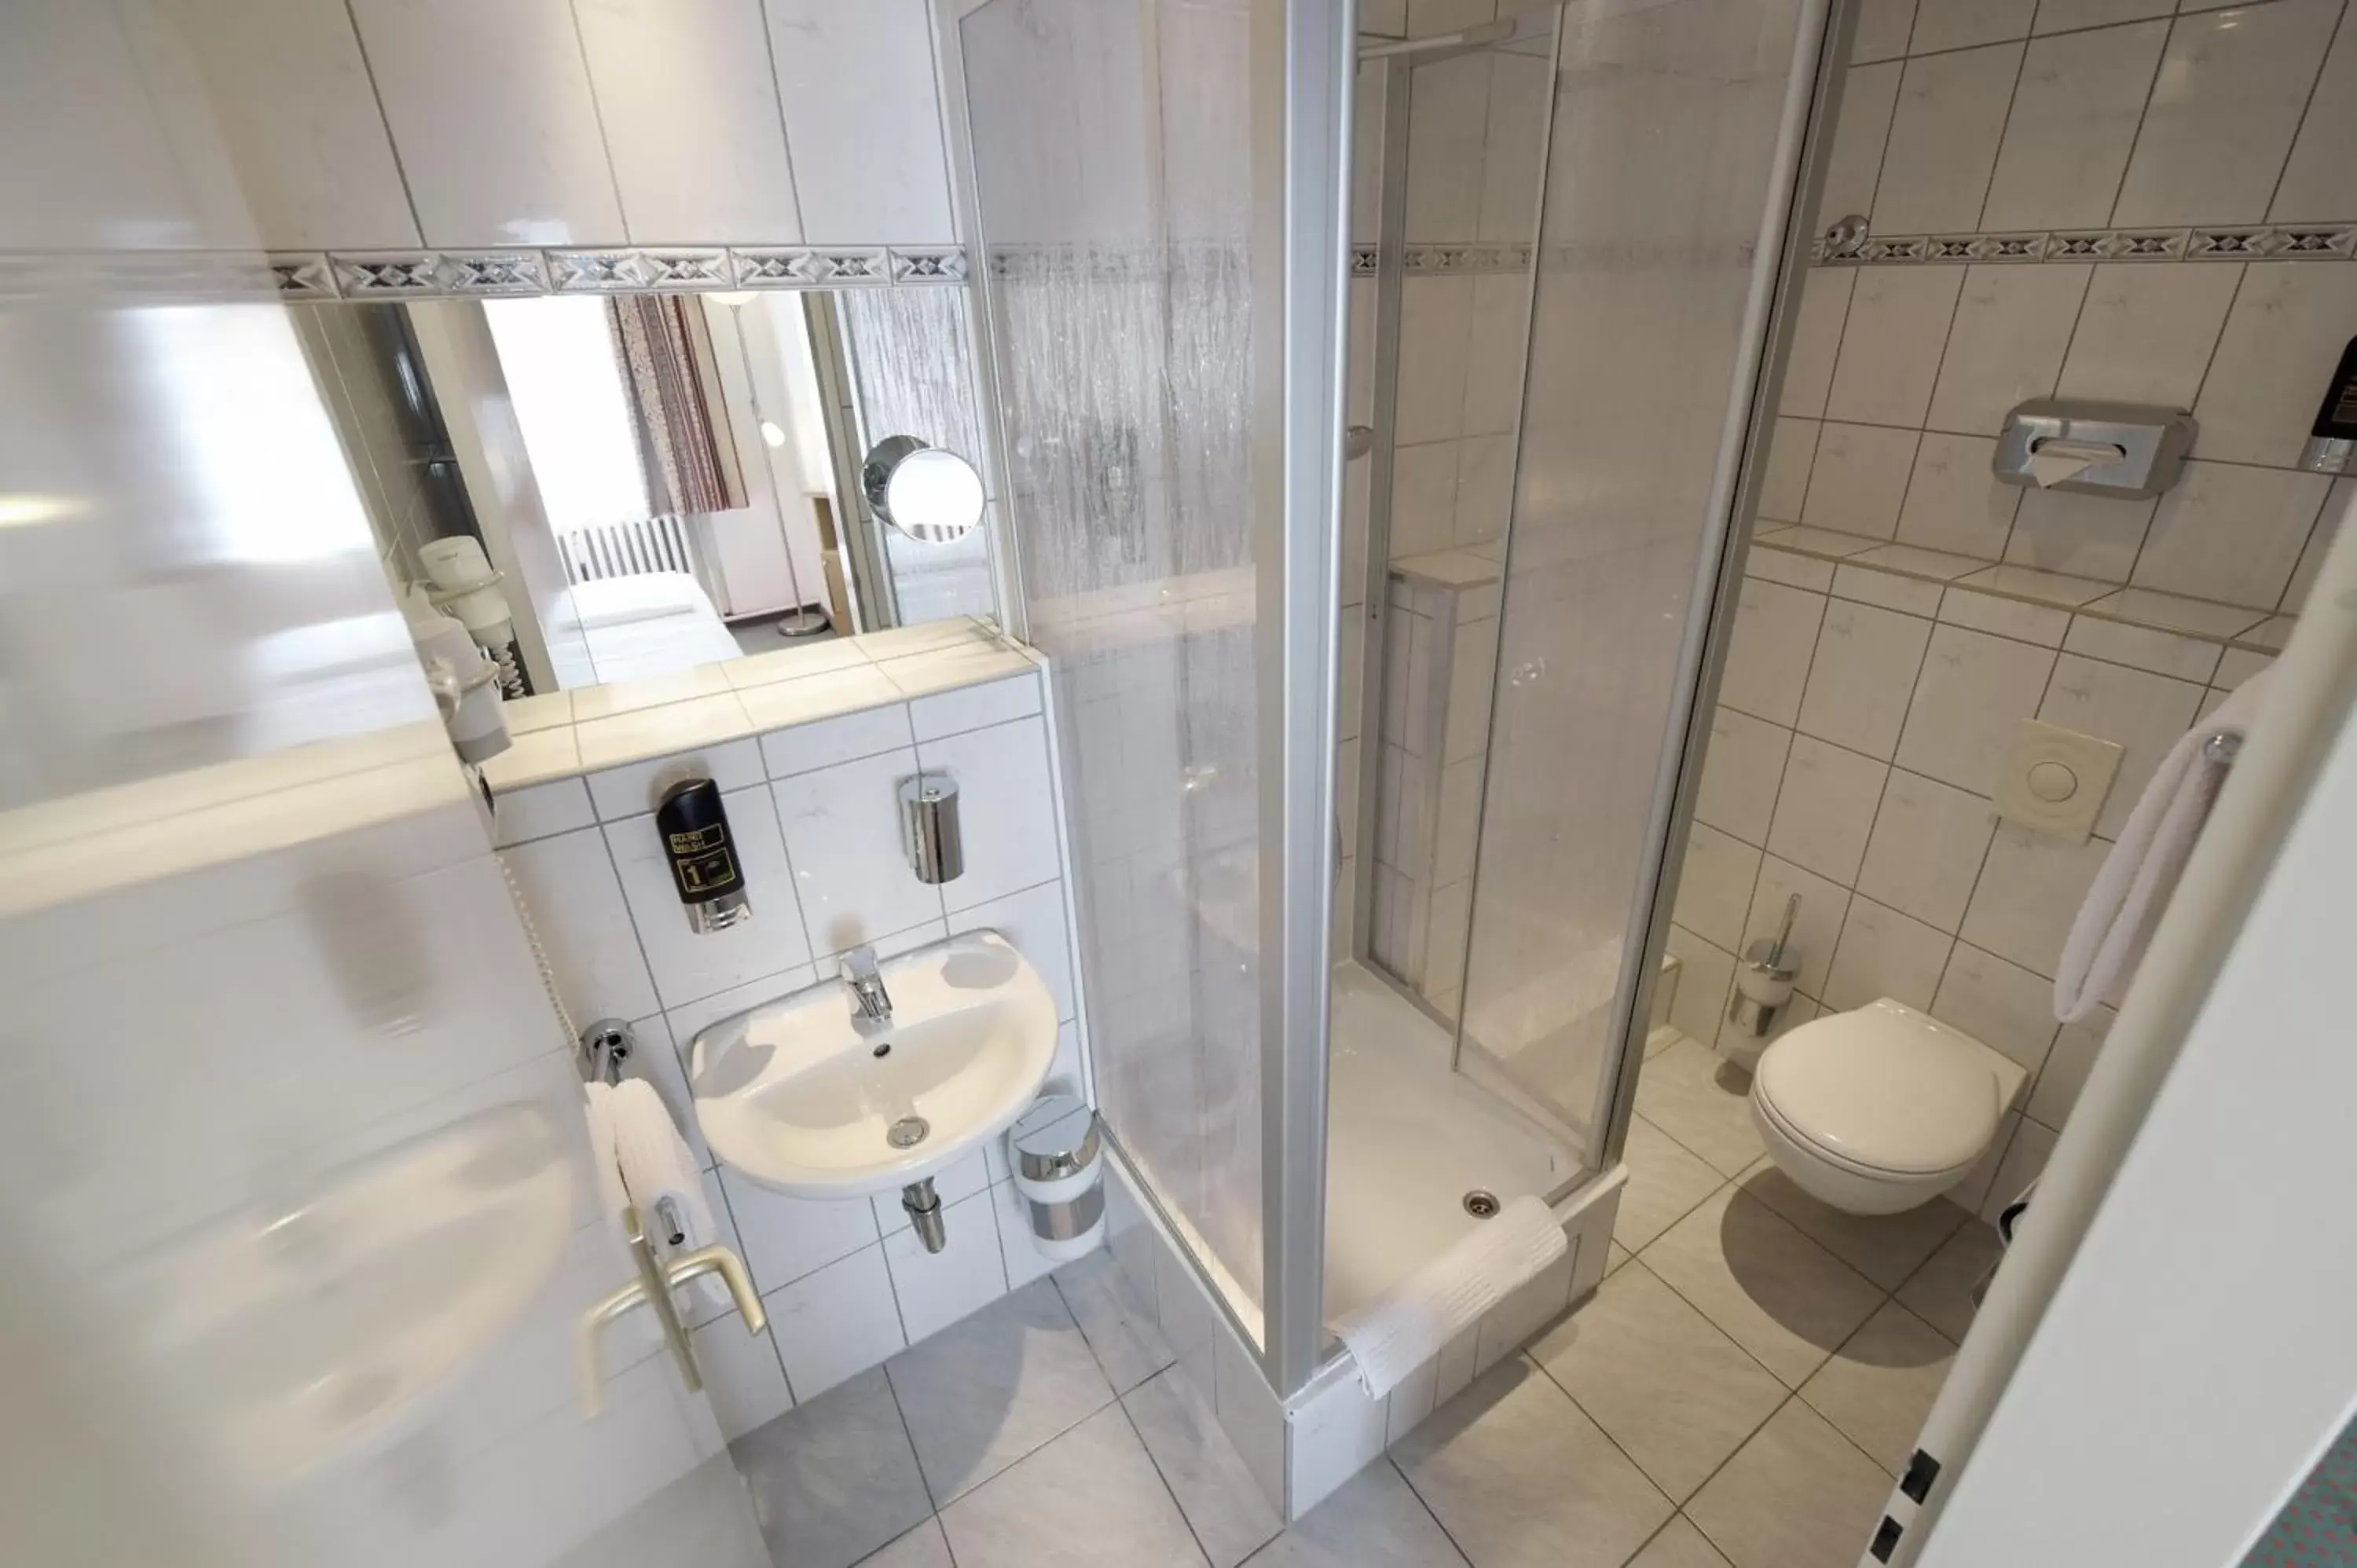 Bathroom in Hotel Tiergarten Berlin